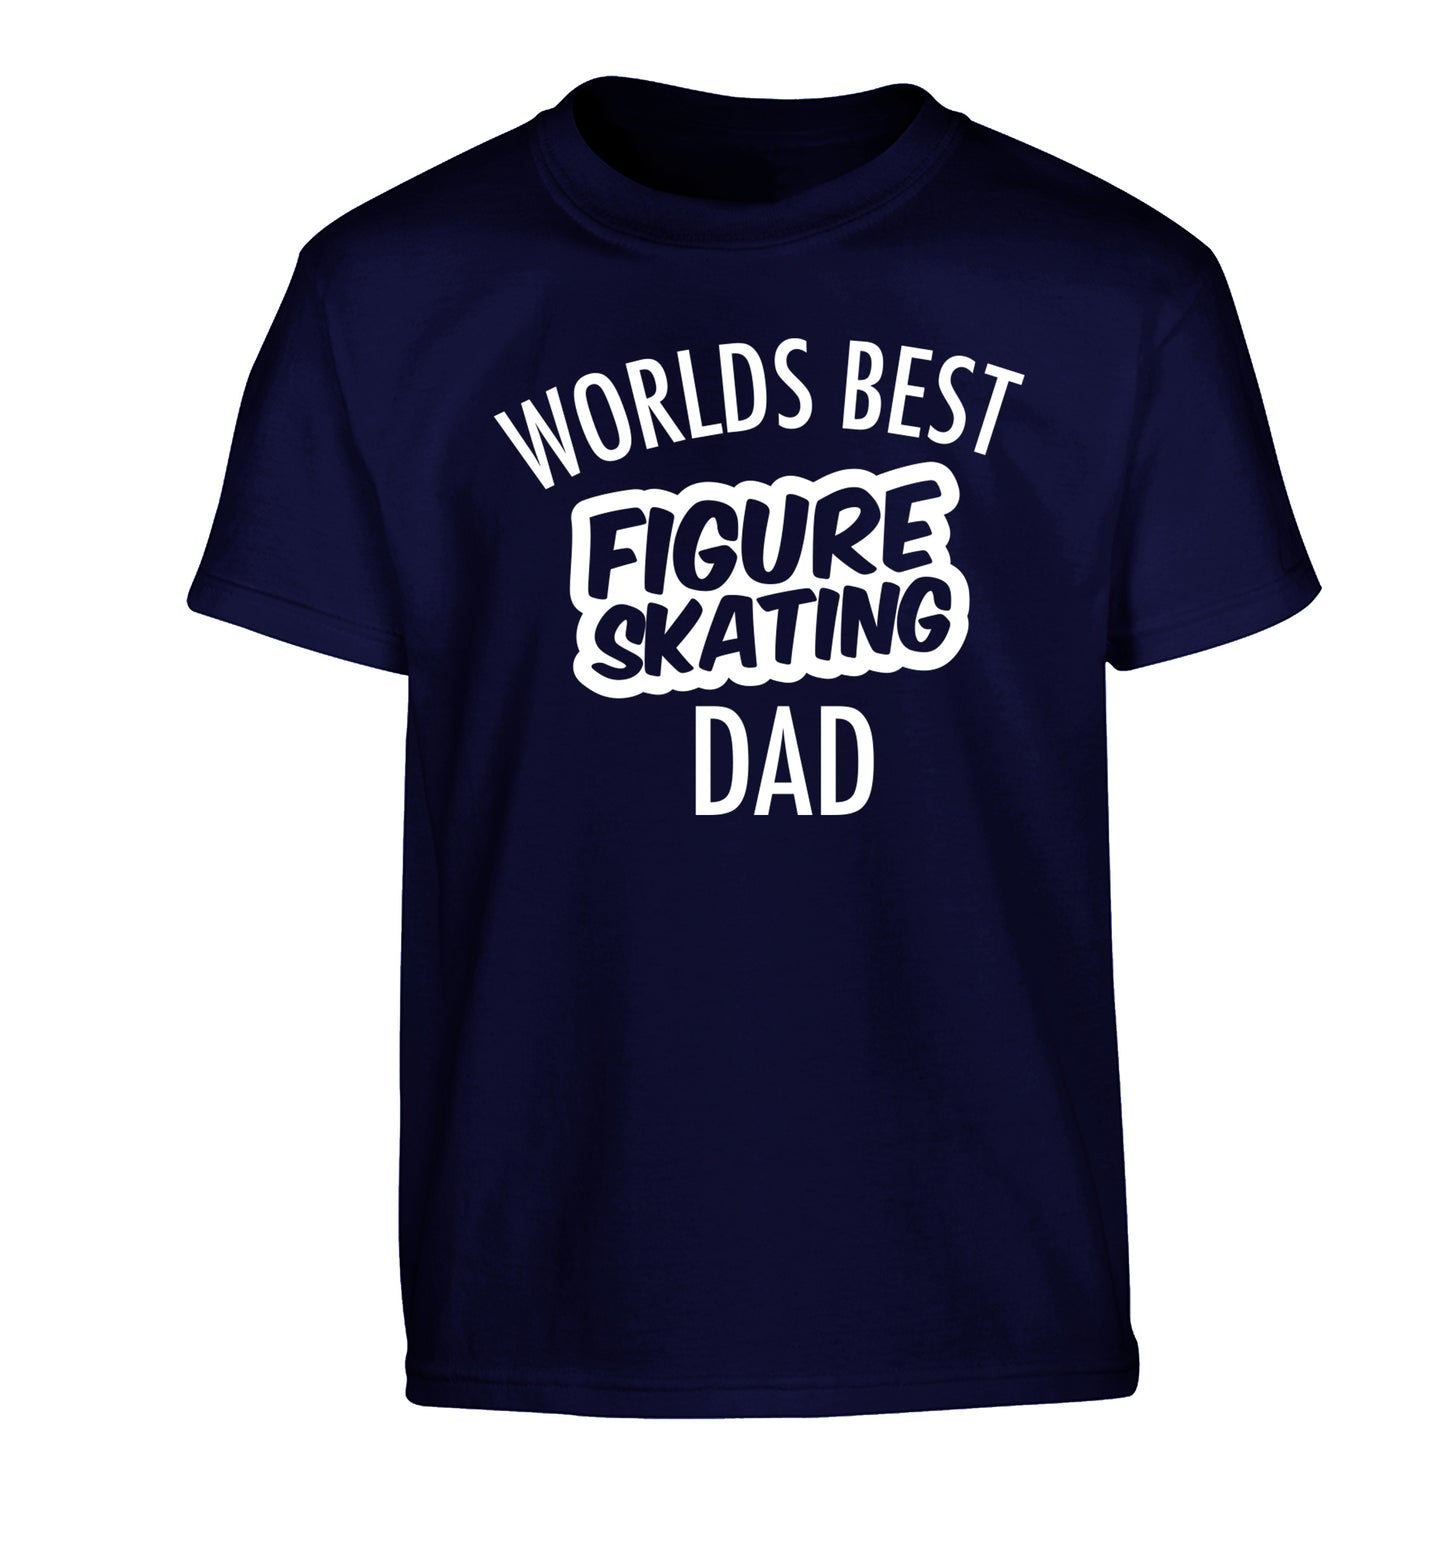 Worlds best figure skating dad Children's navy Tshirt 12-14 Years